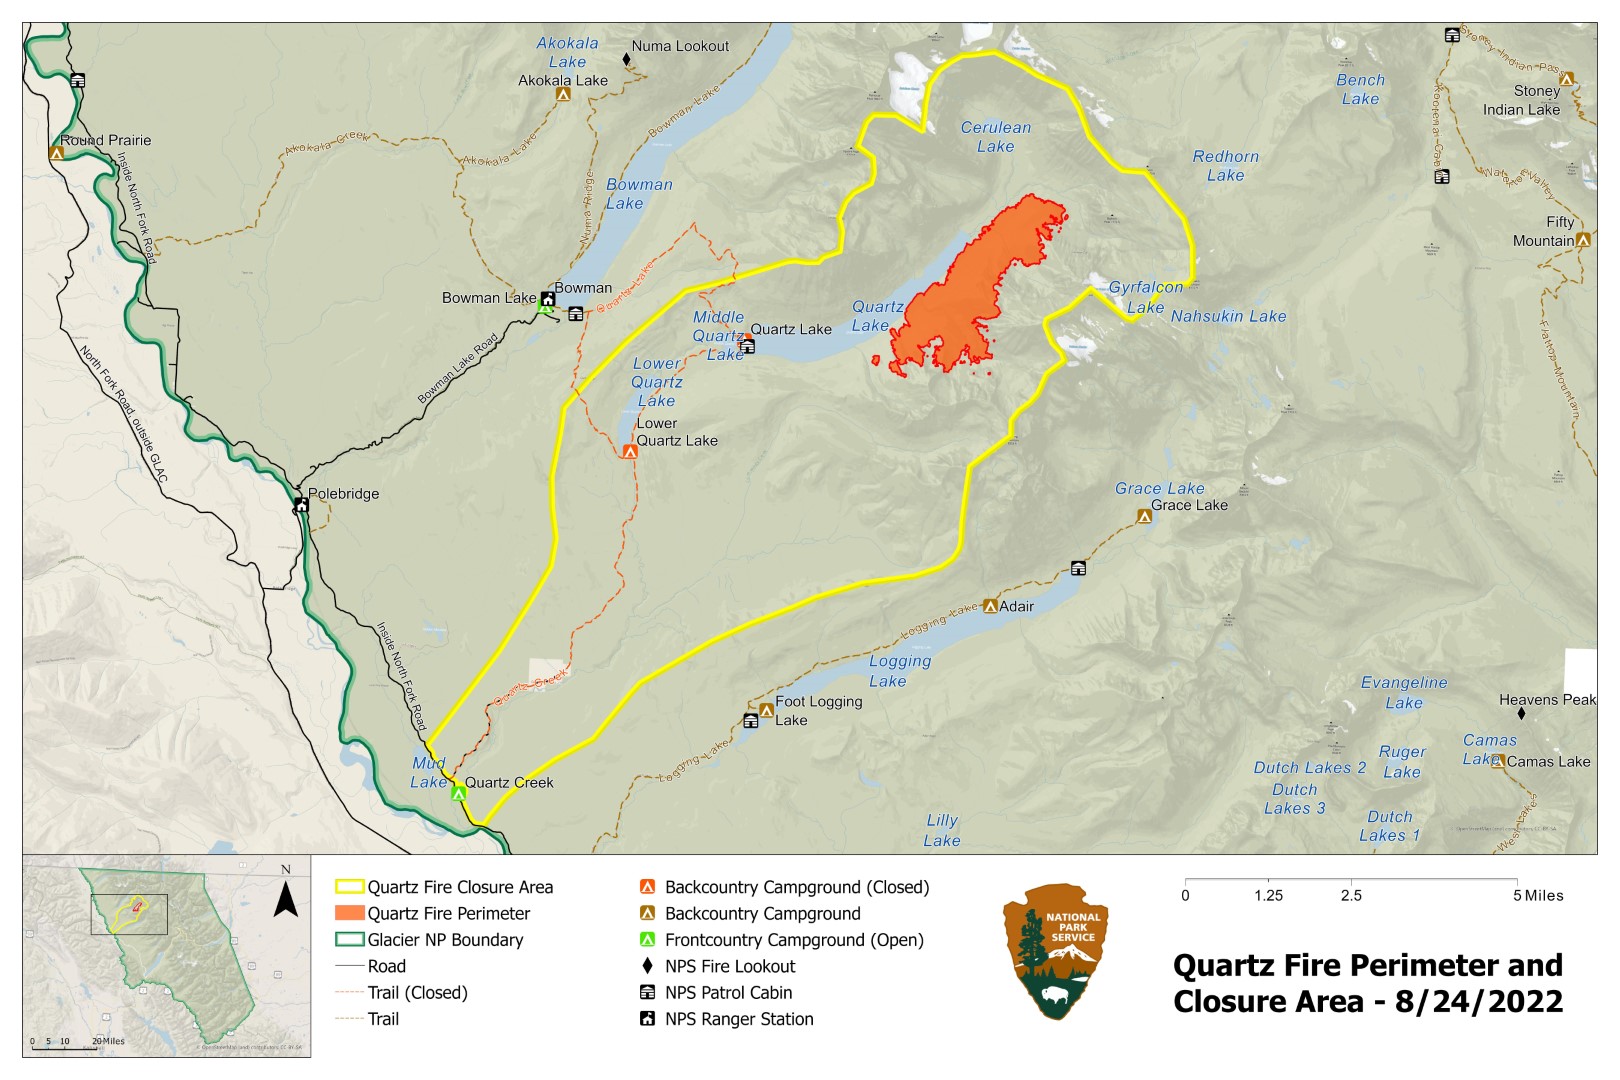 Quartz Fire Perimeter and Closure Area, August 24, 2022